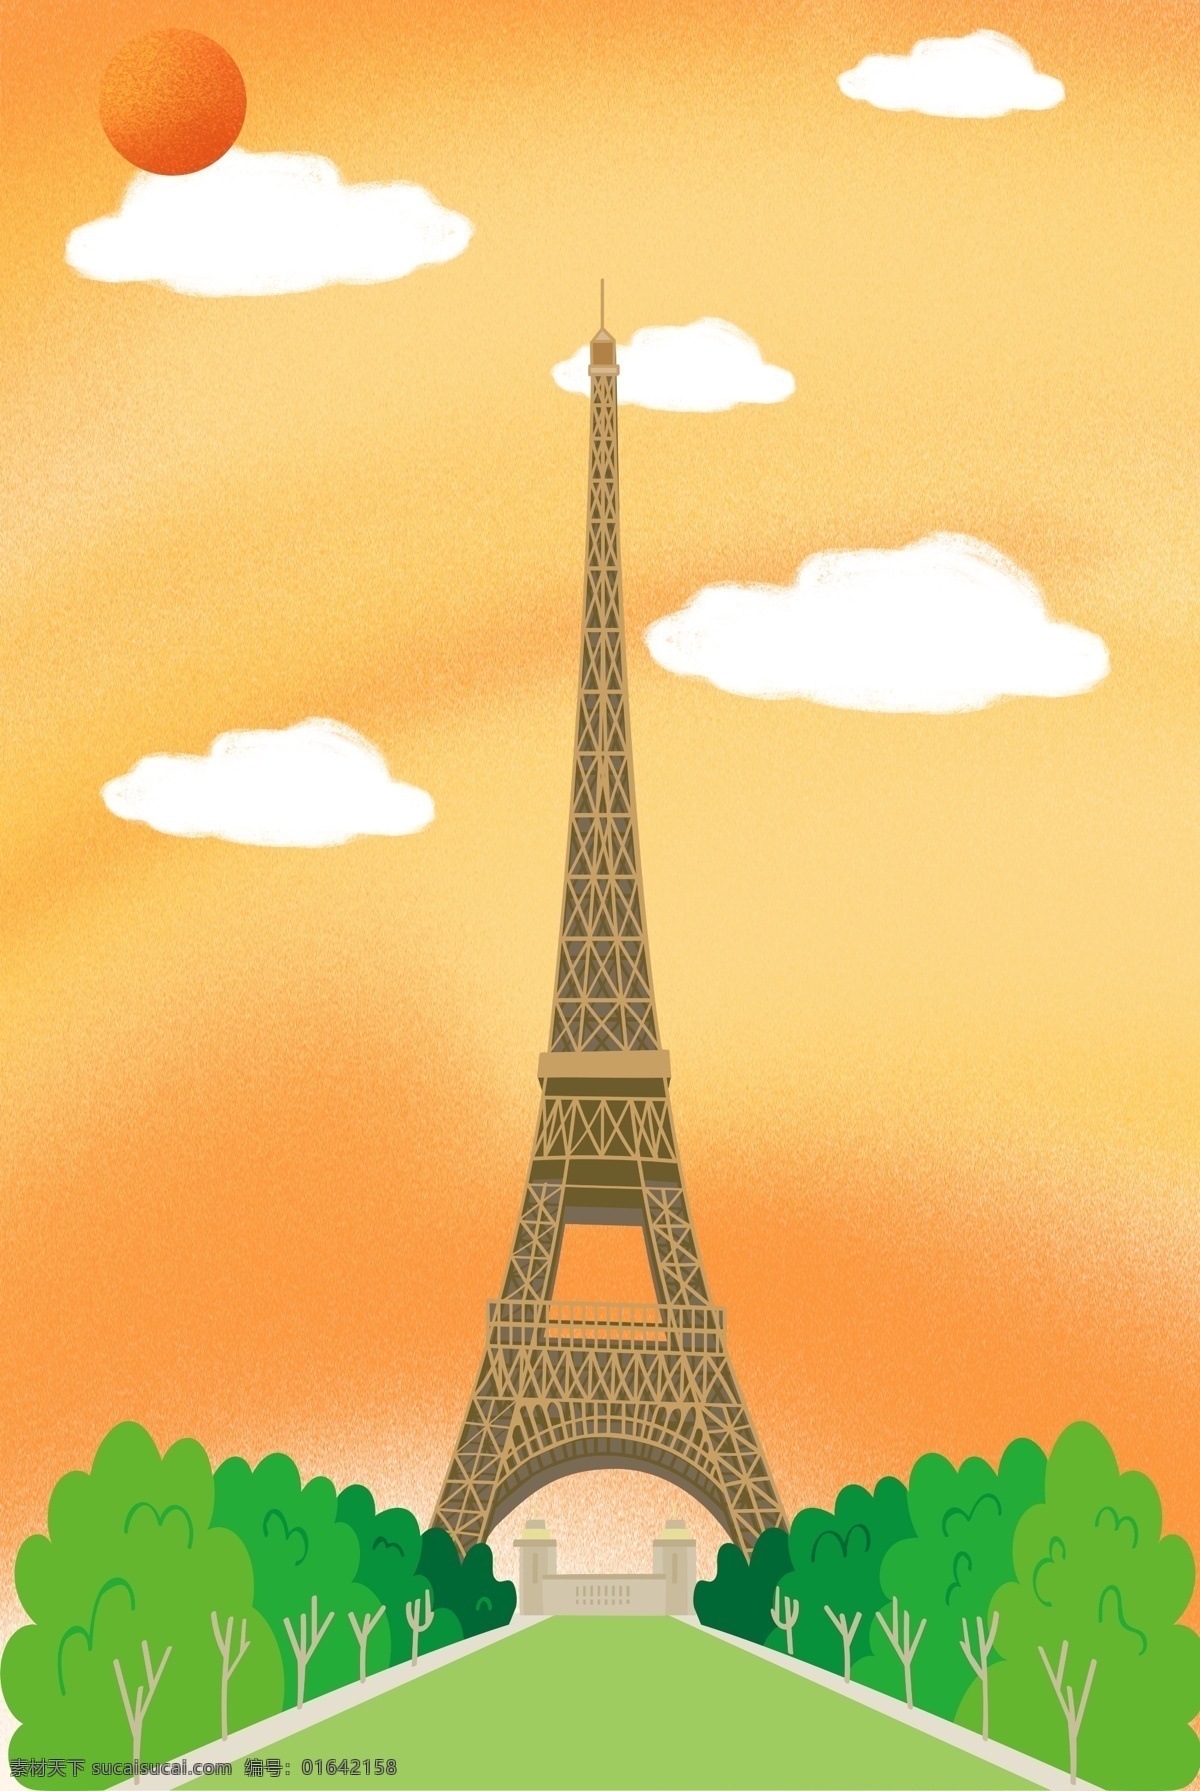 自然风景 创意 背景 合成 简约 巴黎铁塔 树木 天空 白云 卡通